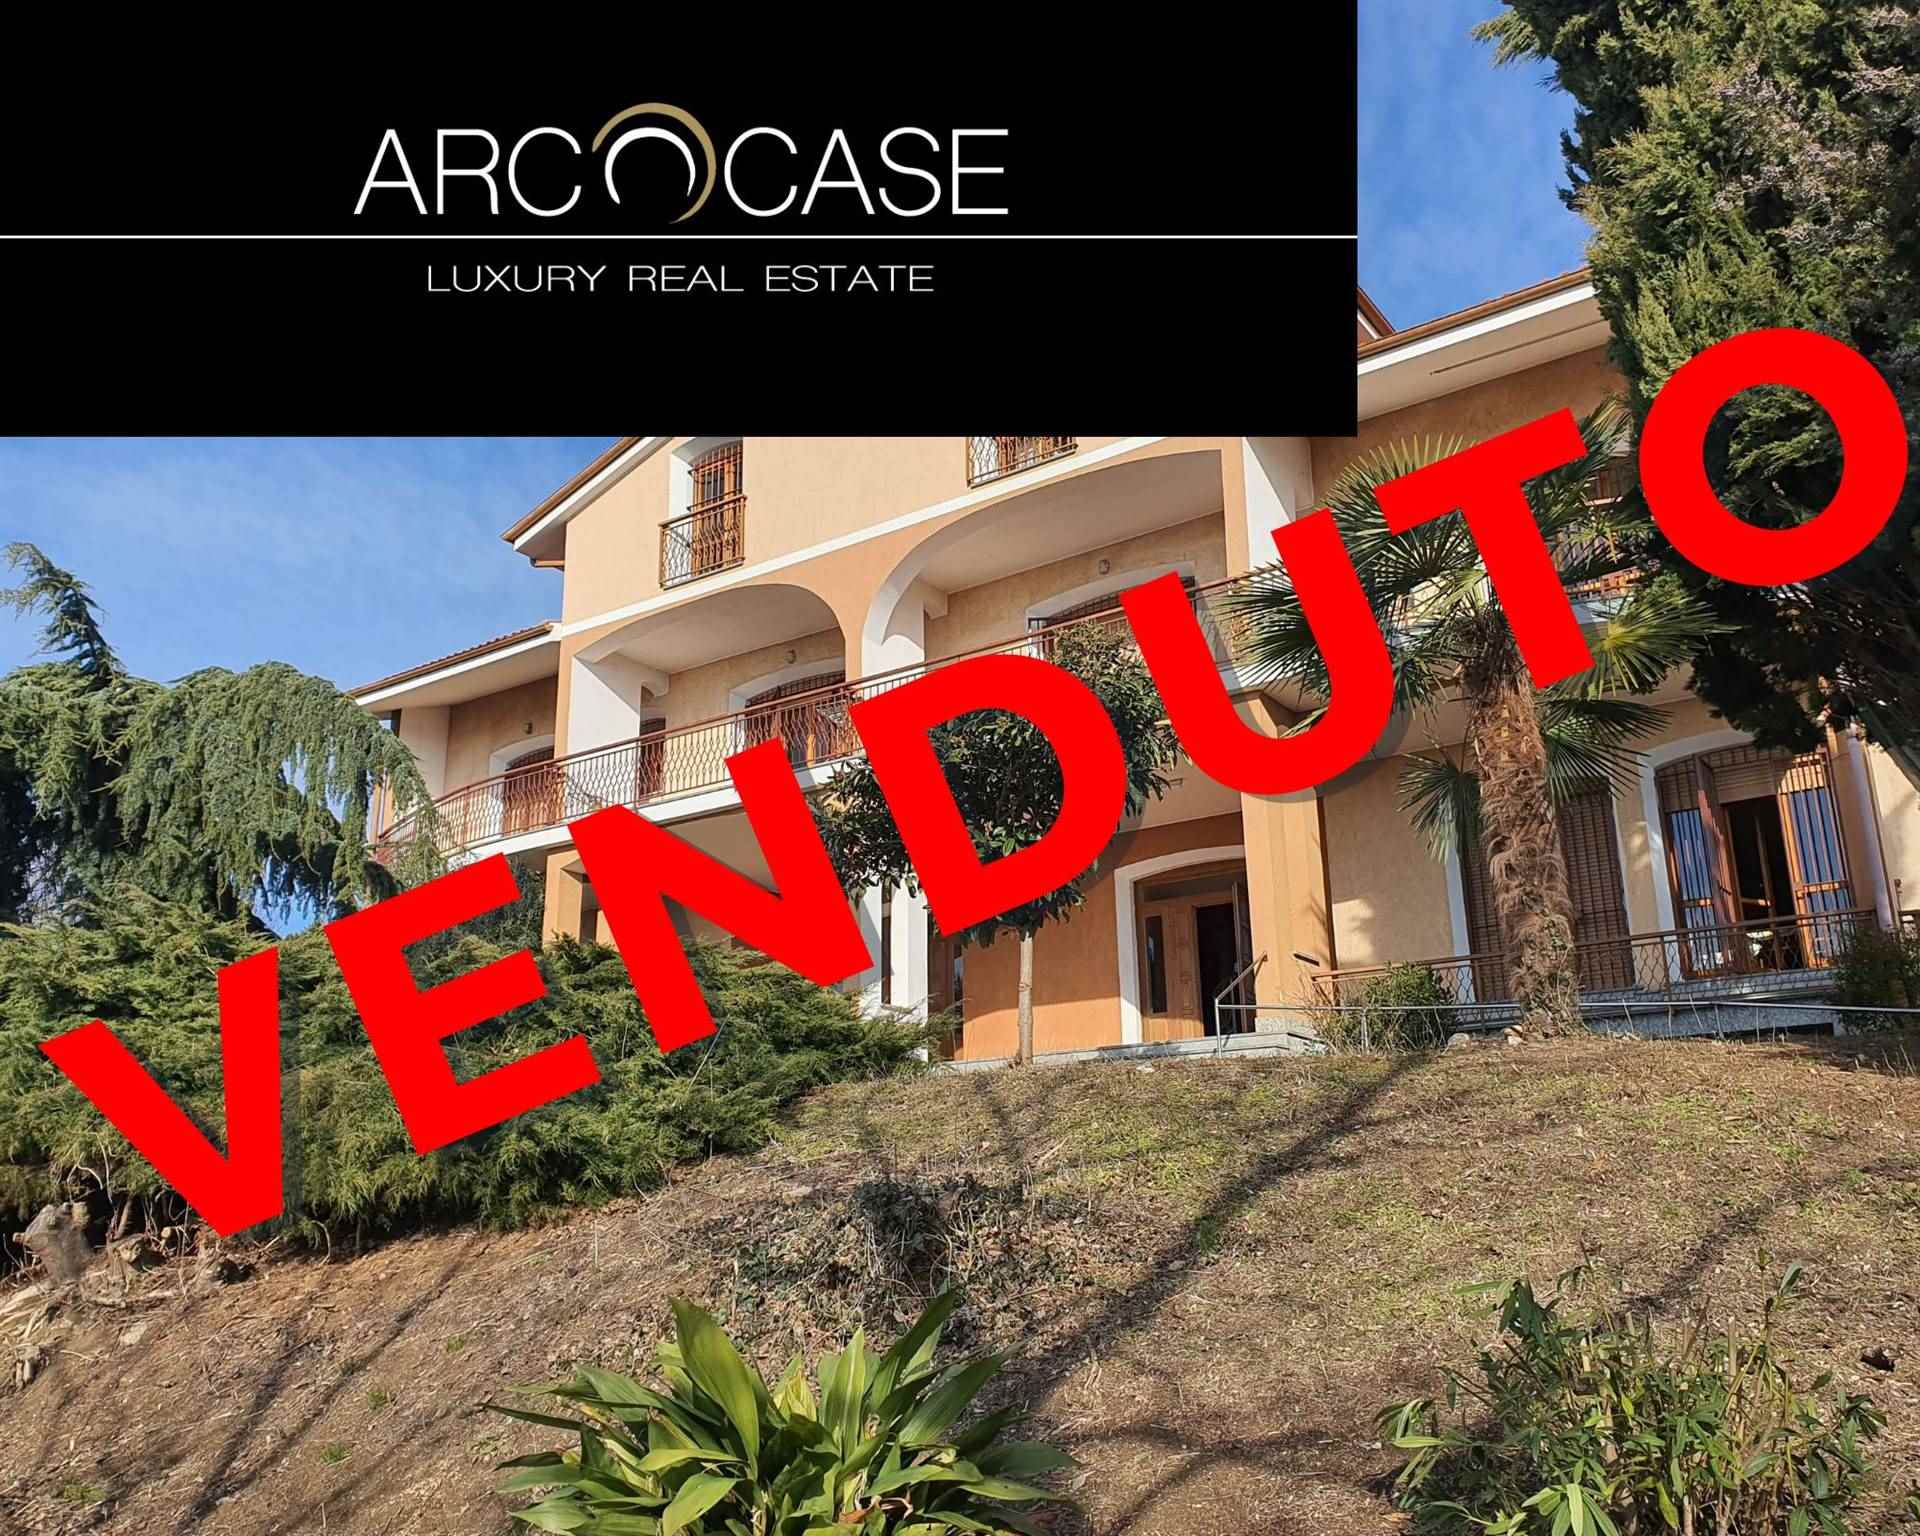 Villa in vendita a Alfiano Natta, 15 locali, zona Zona: Cardona, prezzo € 240.000 | CambioCasa.it